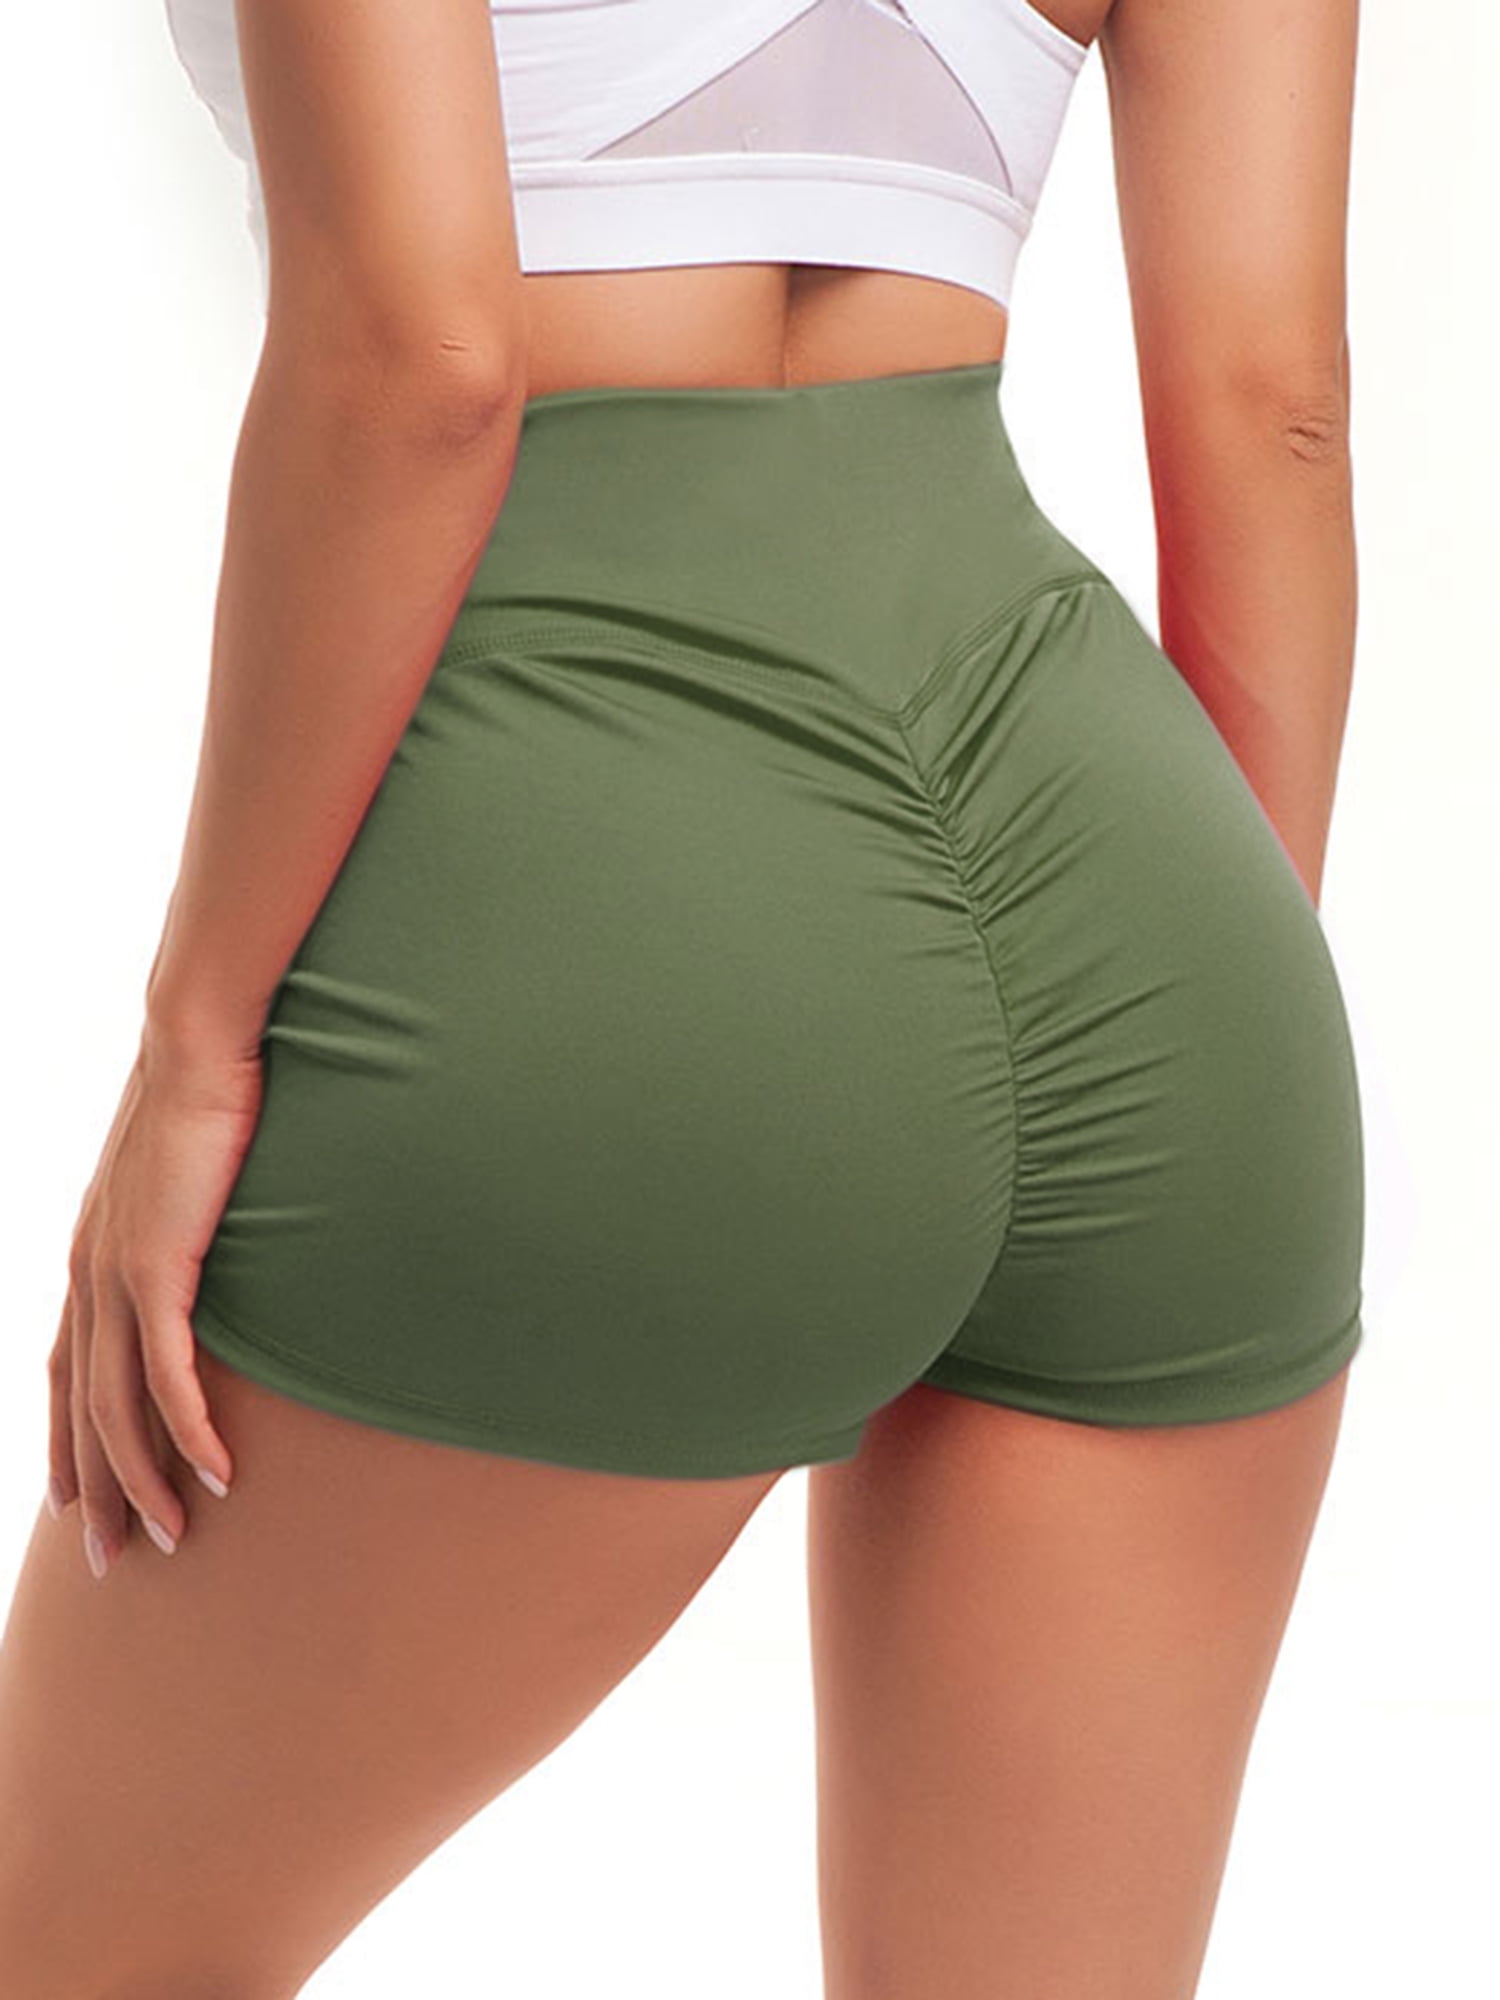 Sport Bottoms for Women - Shorts, Skirts, Leggings | Ardene